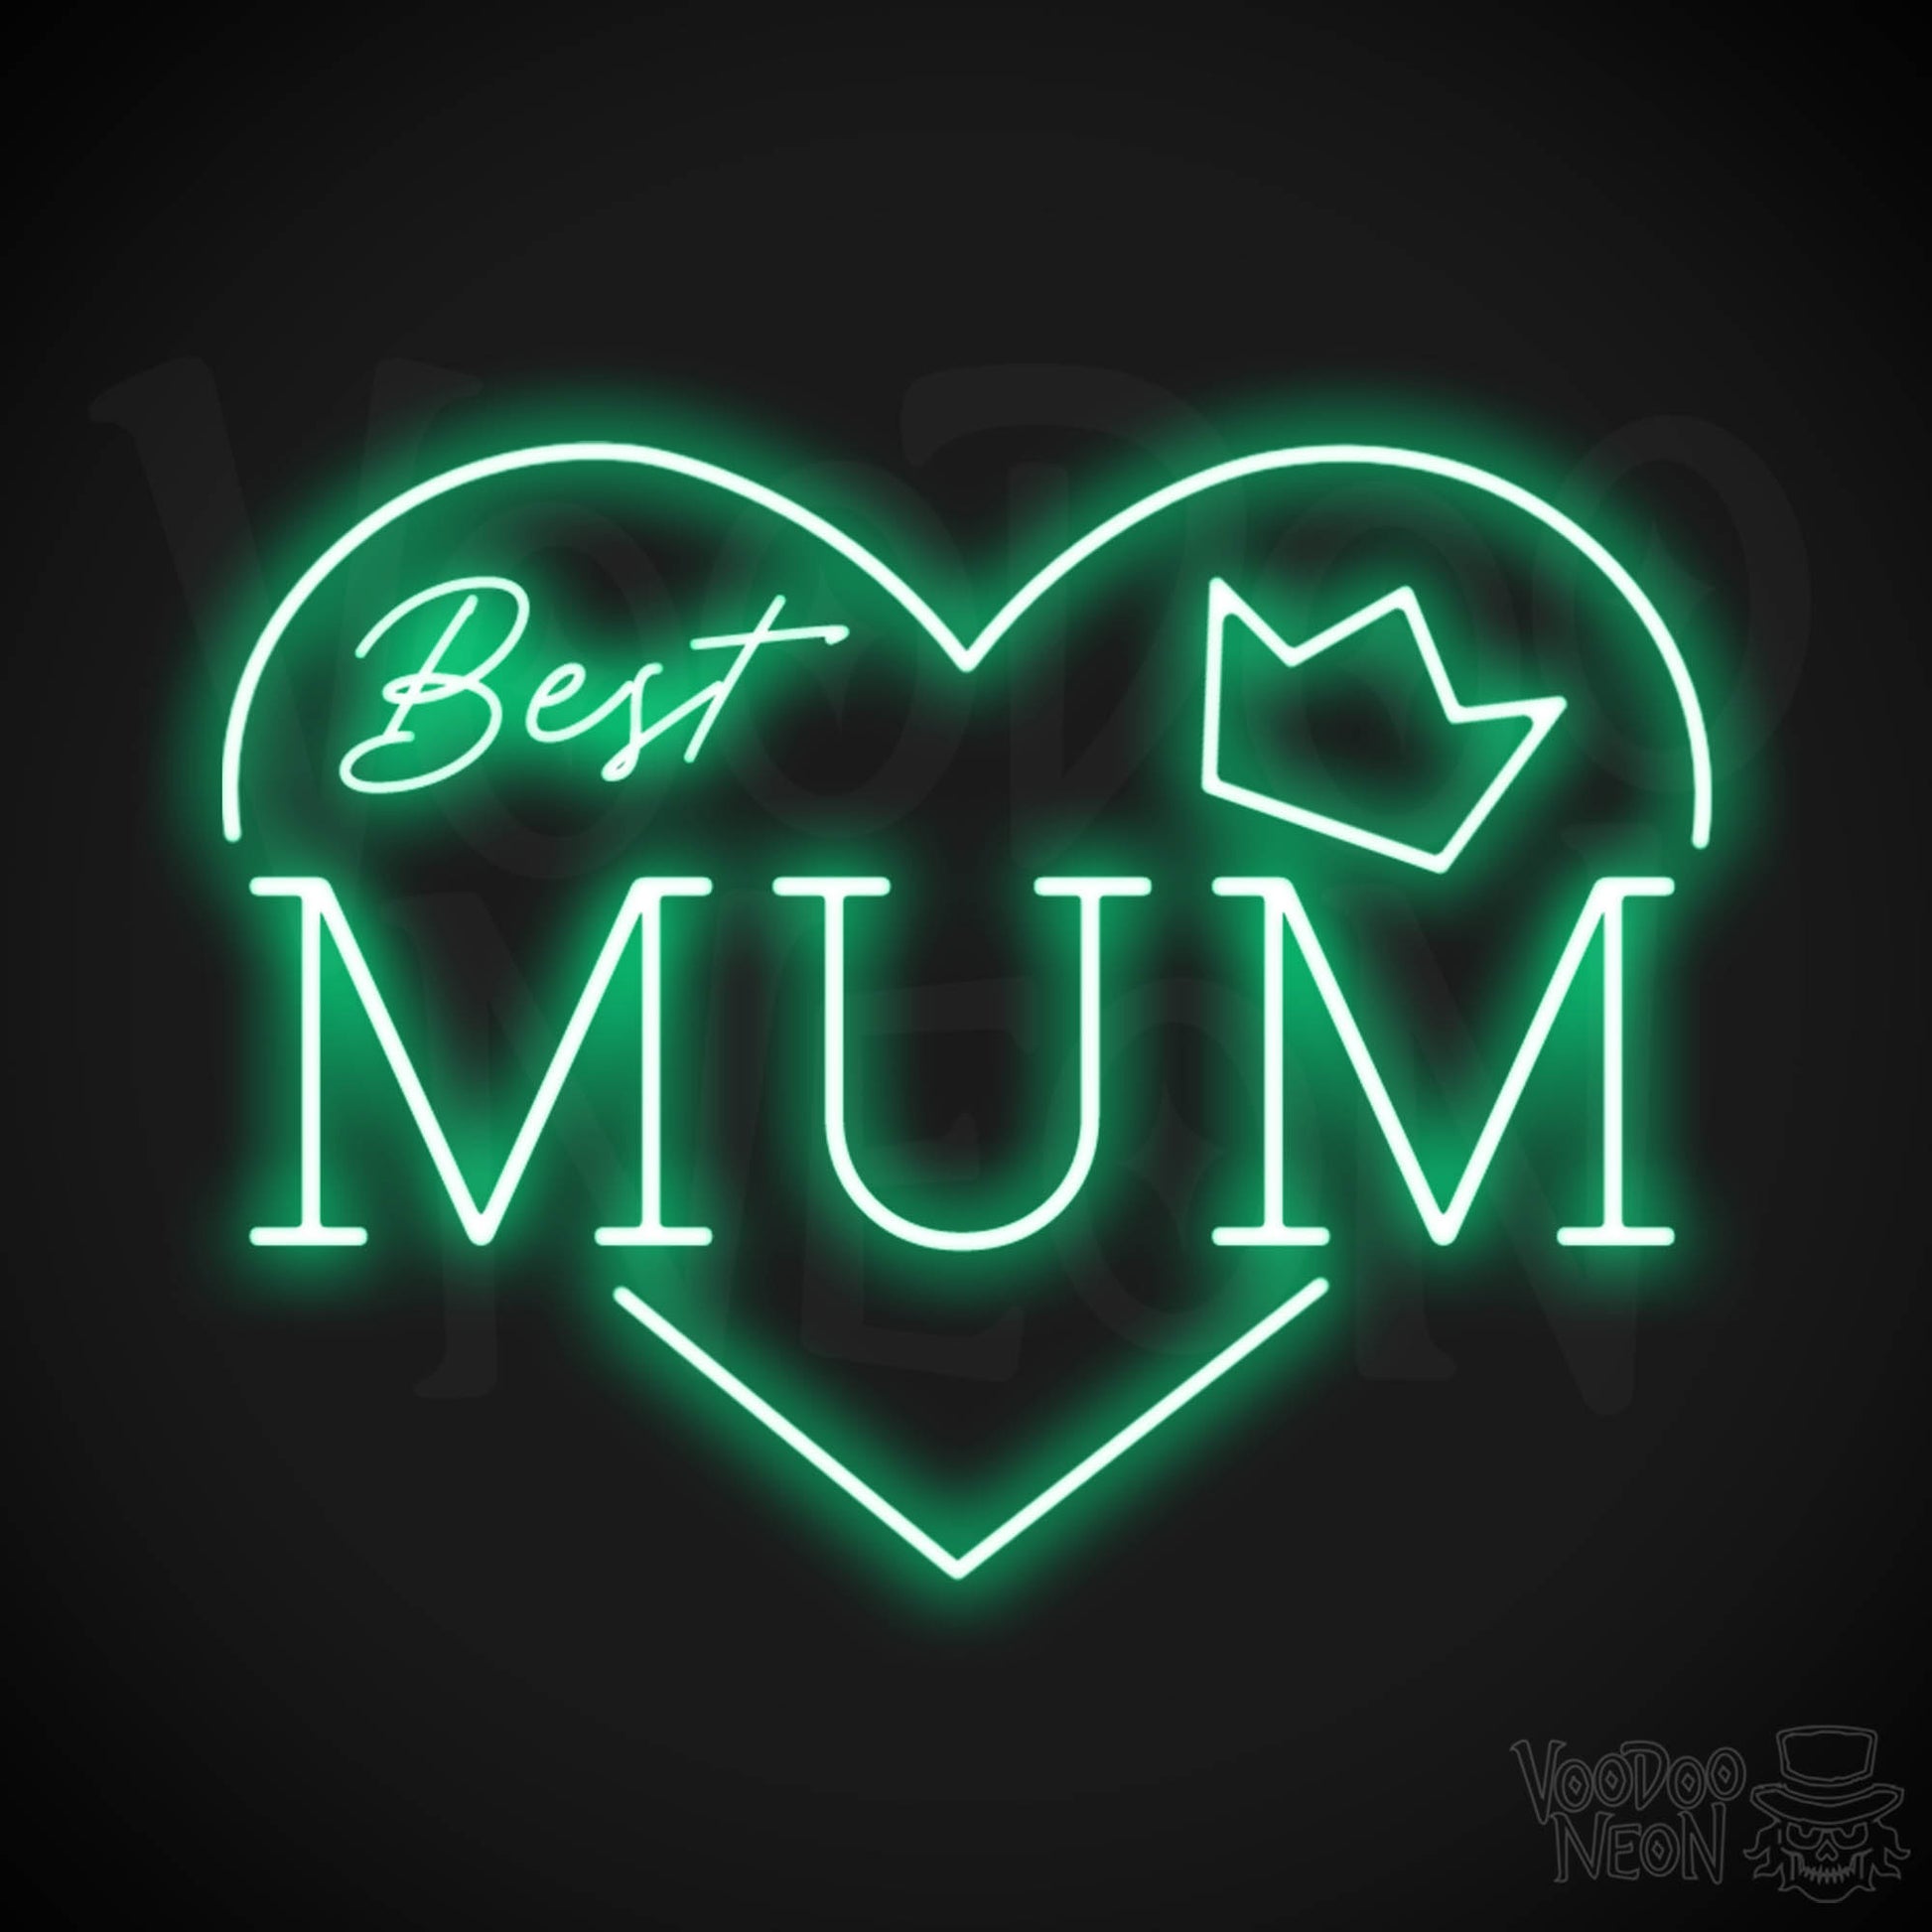 Best Mum Neon Sign - Neon Best Mum Sign - Wall Art - Color Green